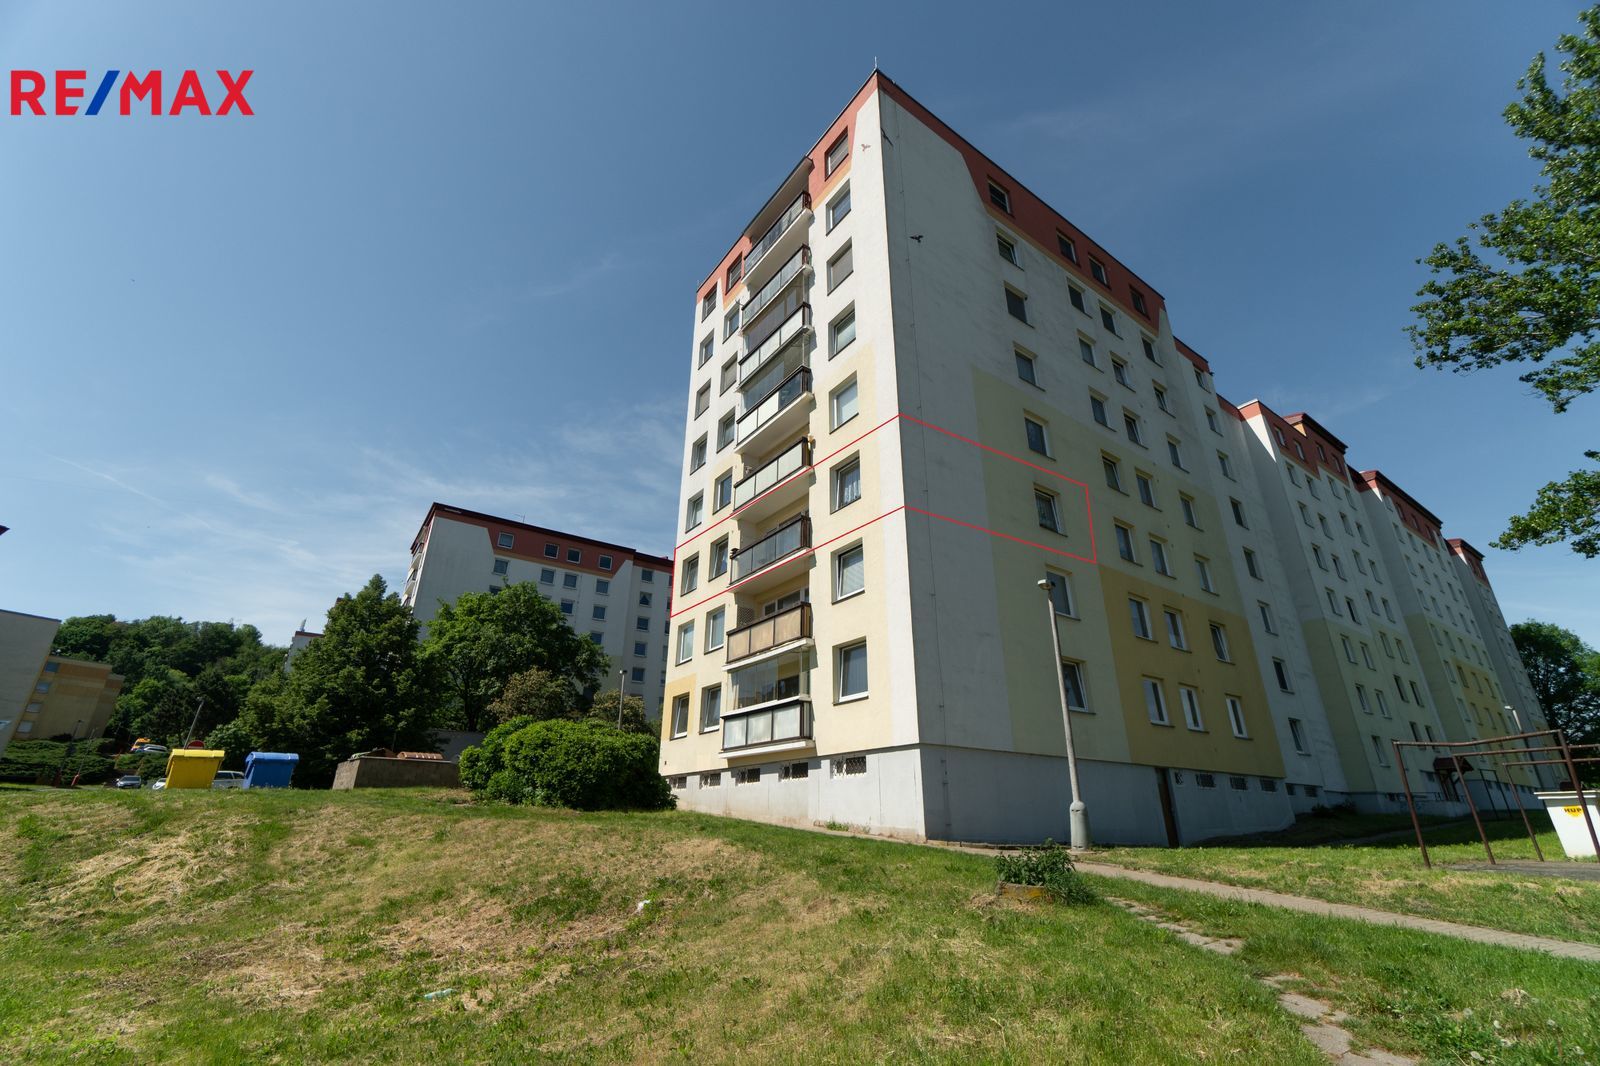 Prodej bytu 4+1 v osobním vlastnictví, 103 m2, Ústí nad Labem